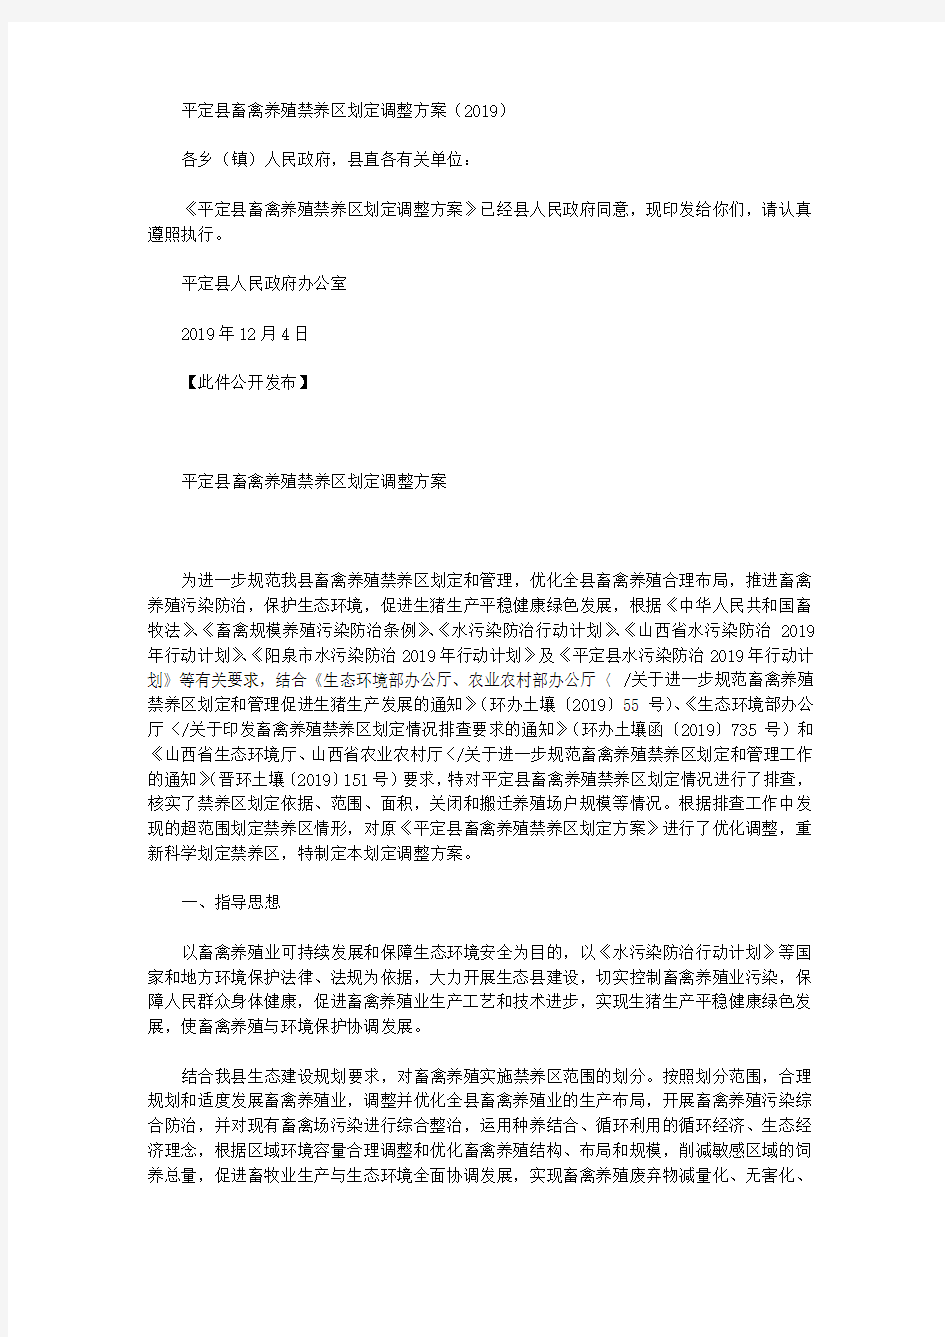 平定县畜禽养殖禁养区划定调整方案(2019)